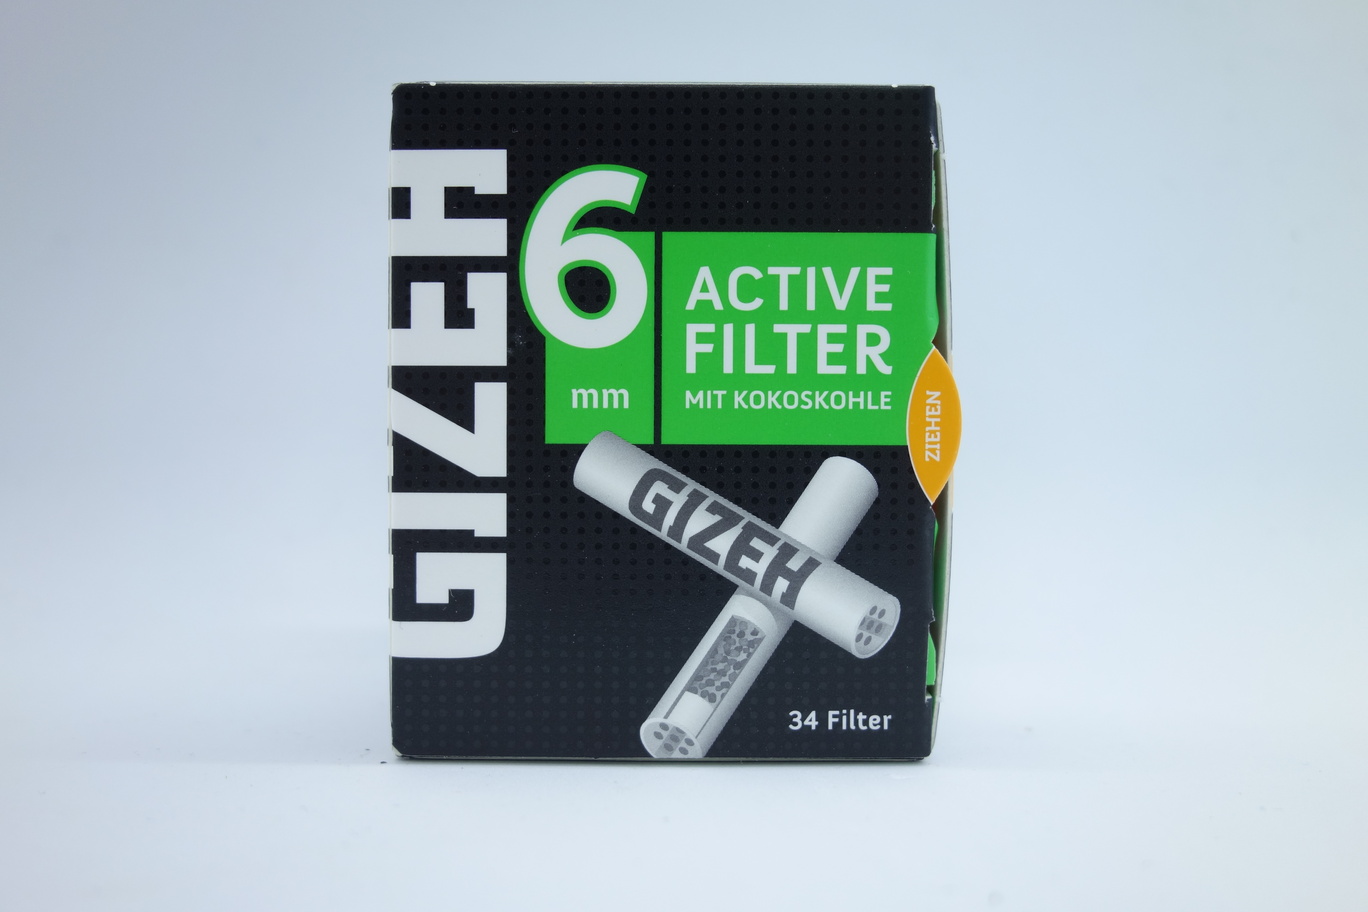 Gizeh Active Filter Black 6mm, 50 Stück